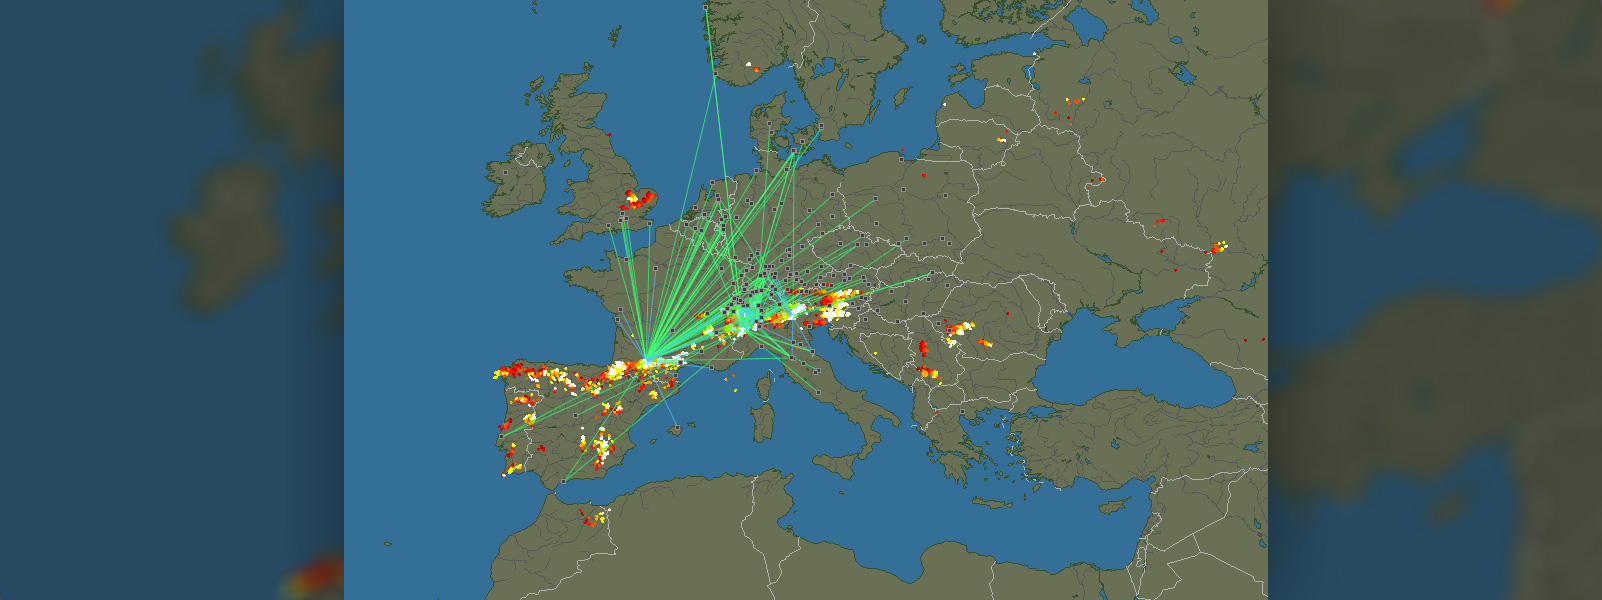 Карта молний в реальном времени. Грозопеленгация Blitzortung.